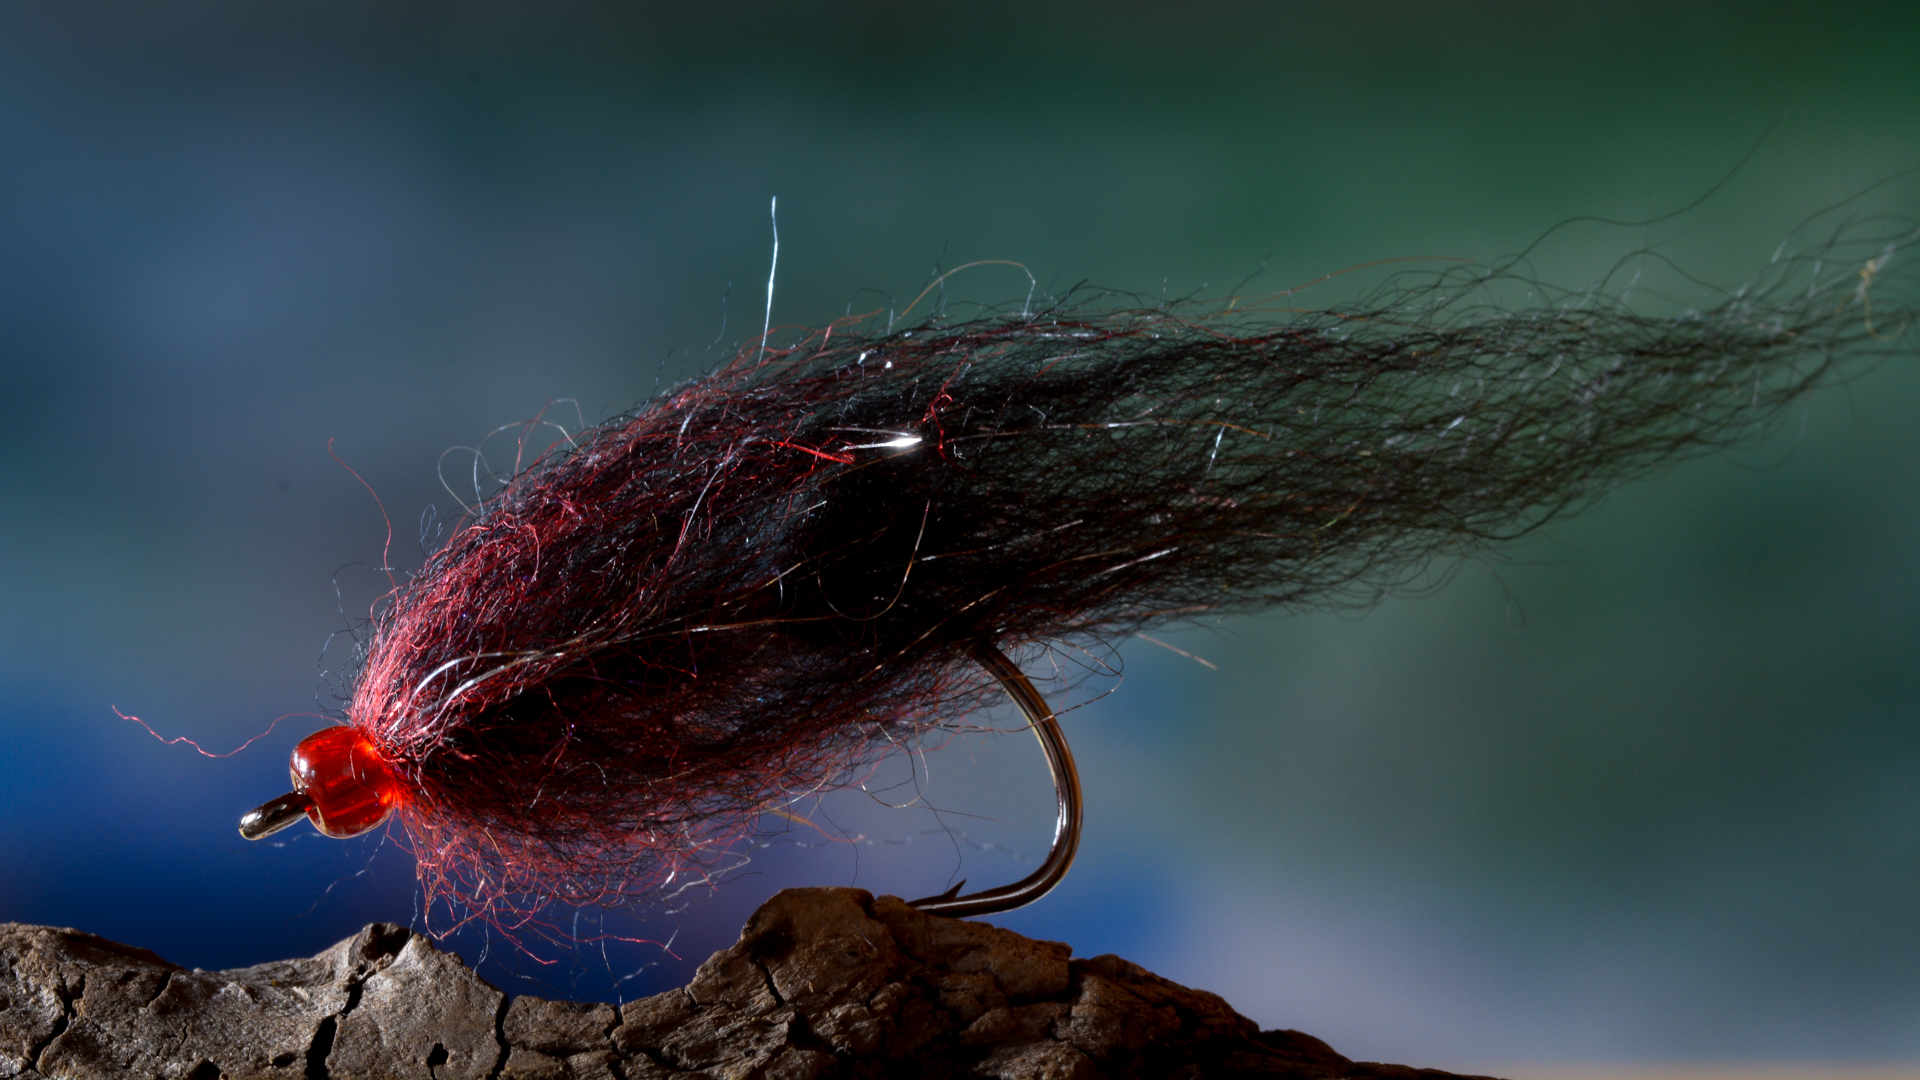 Maroon'n'black Wool Leech - trout streamer fly tying - Michael Jensens  Angling